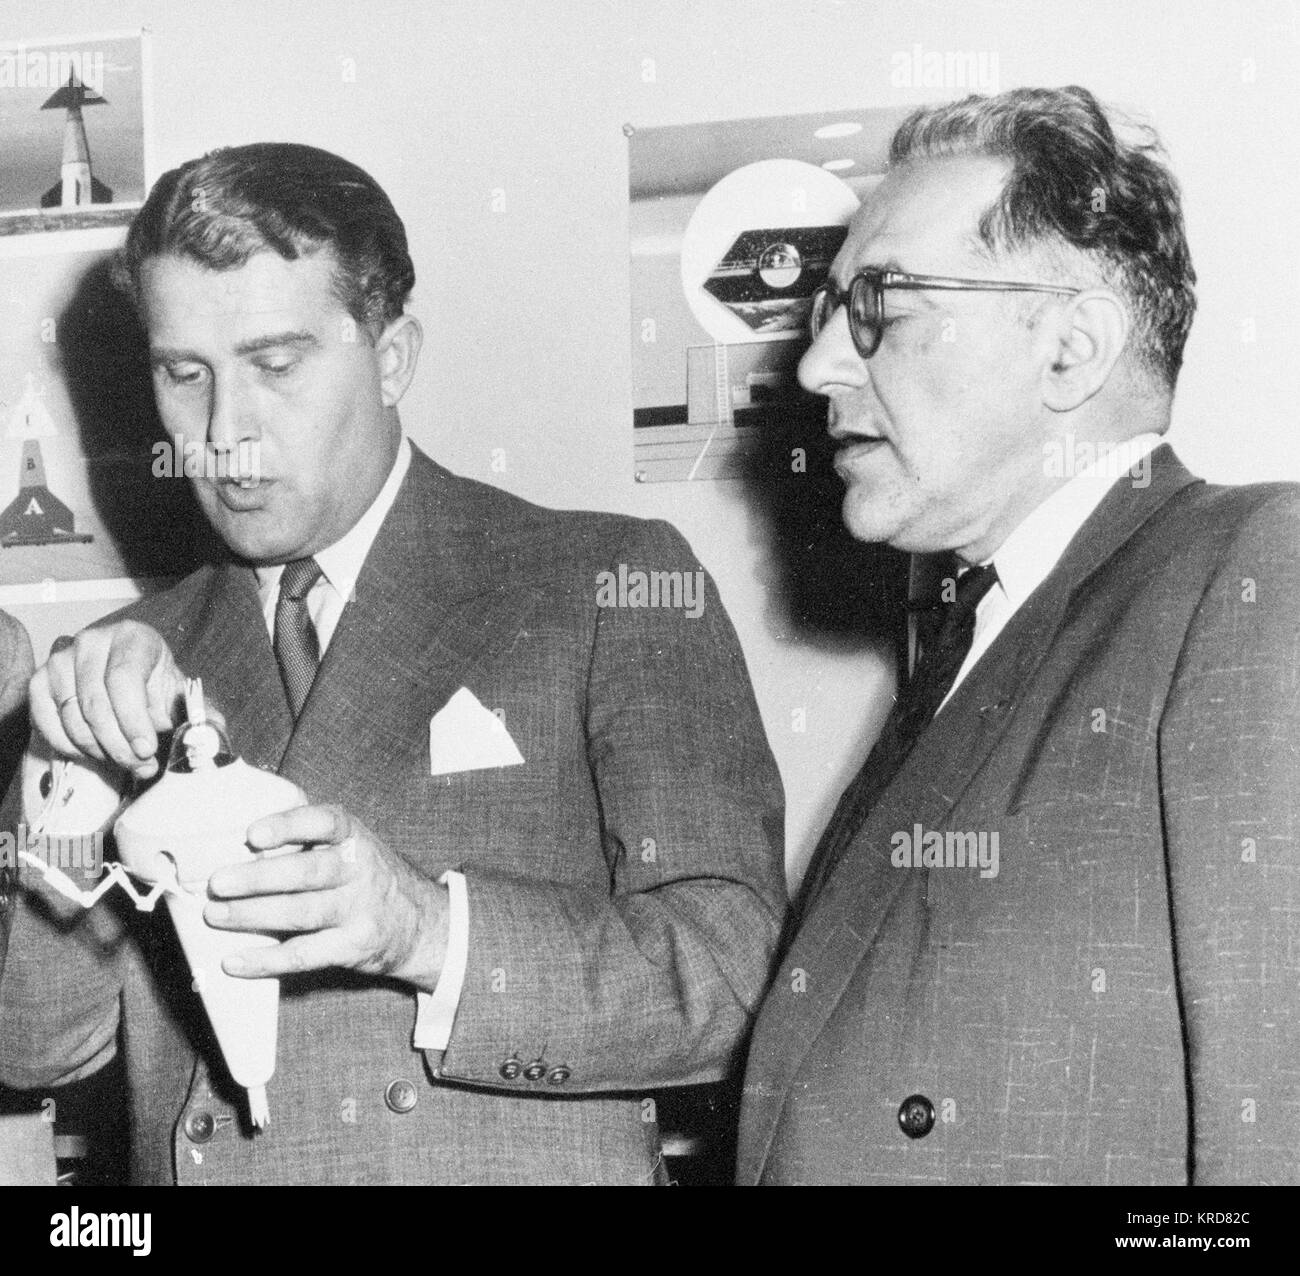 L TO R: HALSER, HEINZ-DR.; VON BRAUN; LEY, WILLEY AT DISNEY STUDIOS WITH BOTTLE SUIT CONCEPT DEVELOPED BY VON BRAUN. Wernher von Braun Willy Ley (1954) Stock Photo